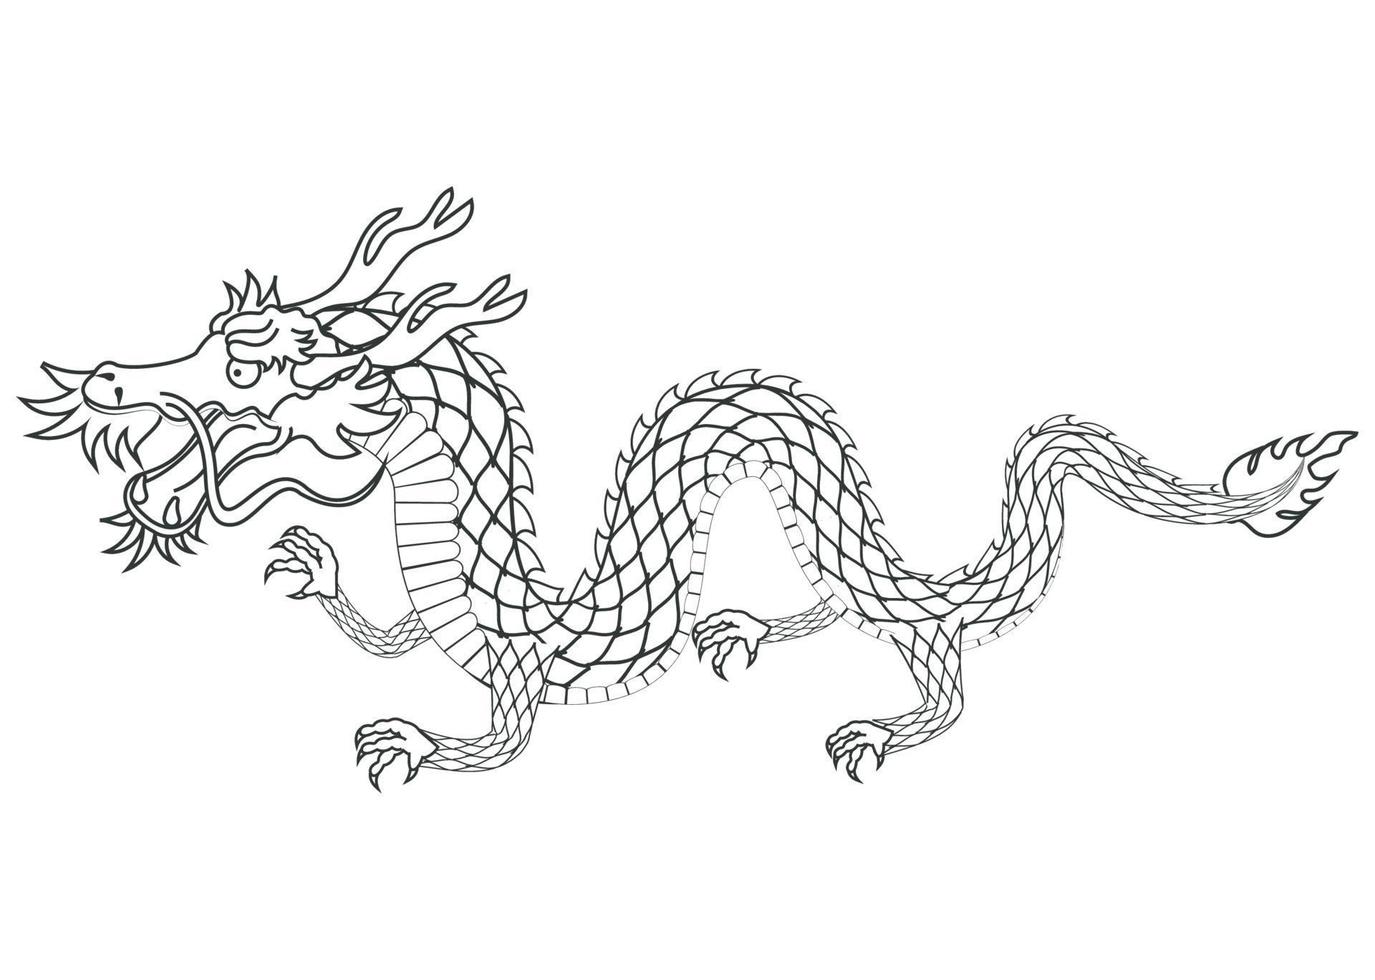 asiatische Drachentierzeichnung vektor